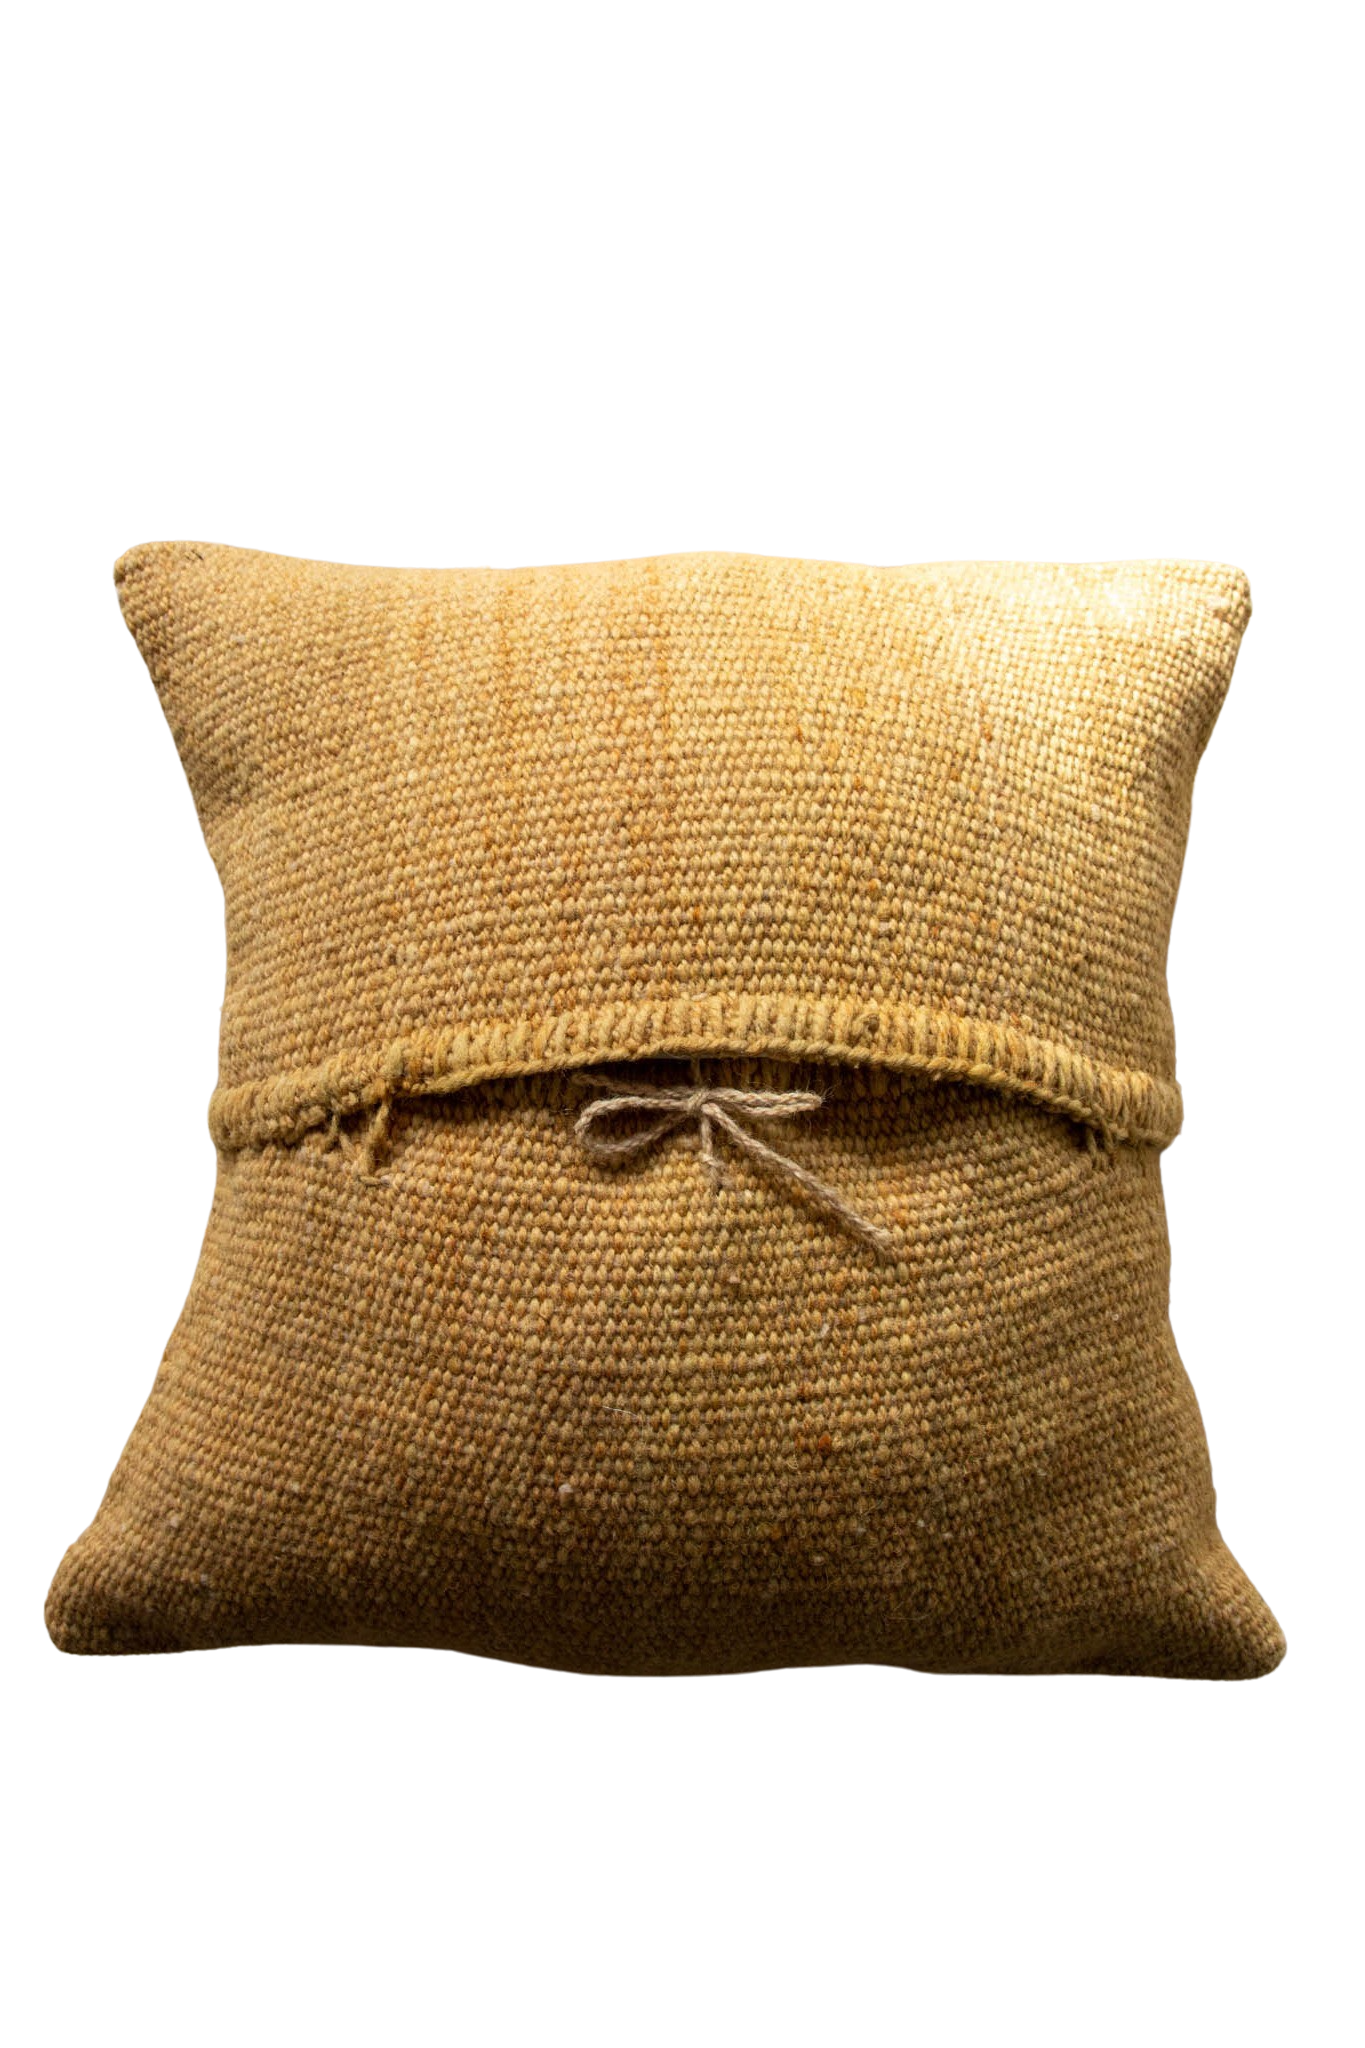 Gaucho cushion pillow 100% sheep wool 